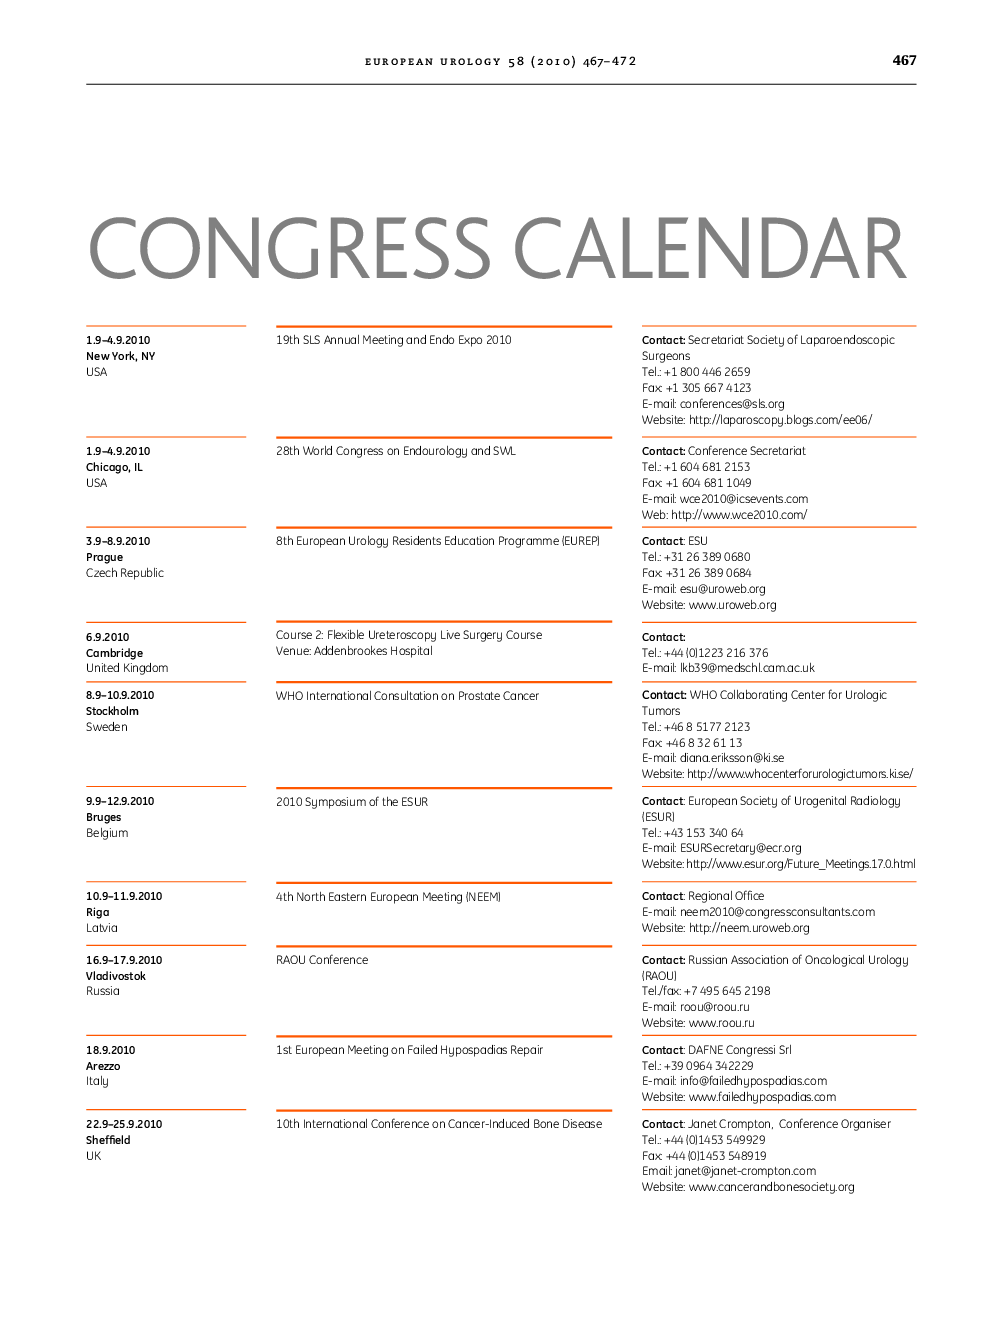 Congress Calendar